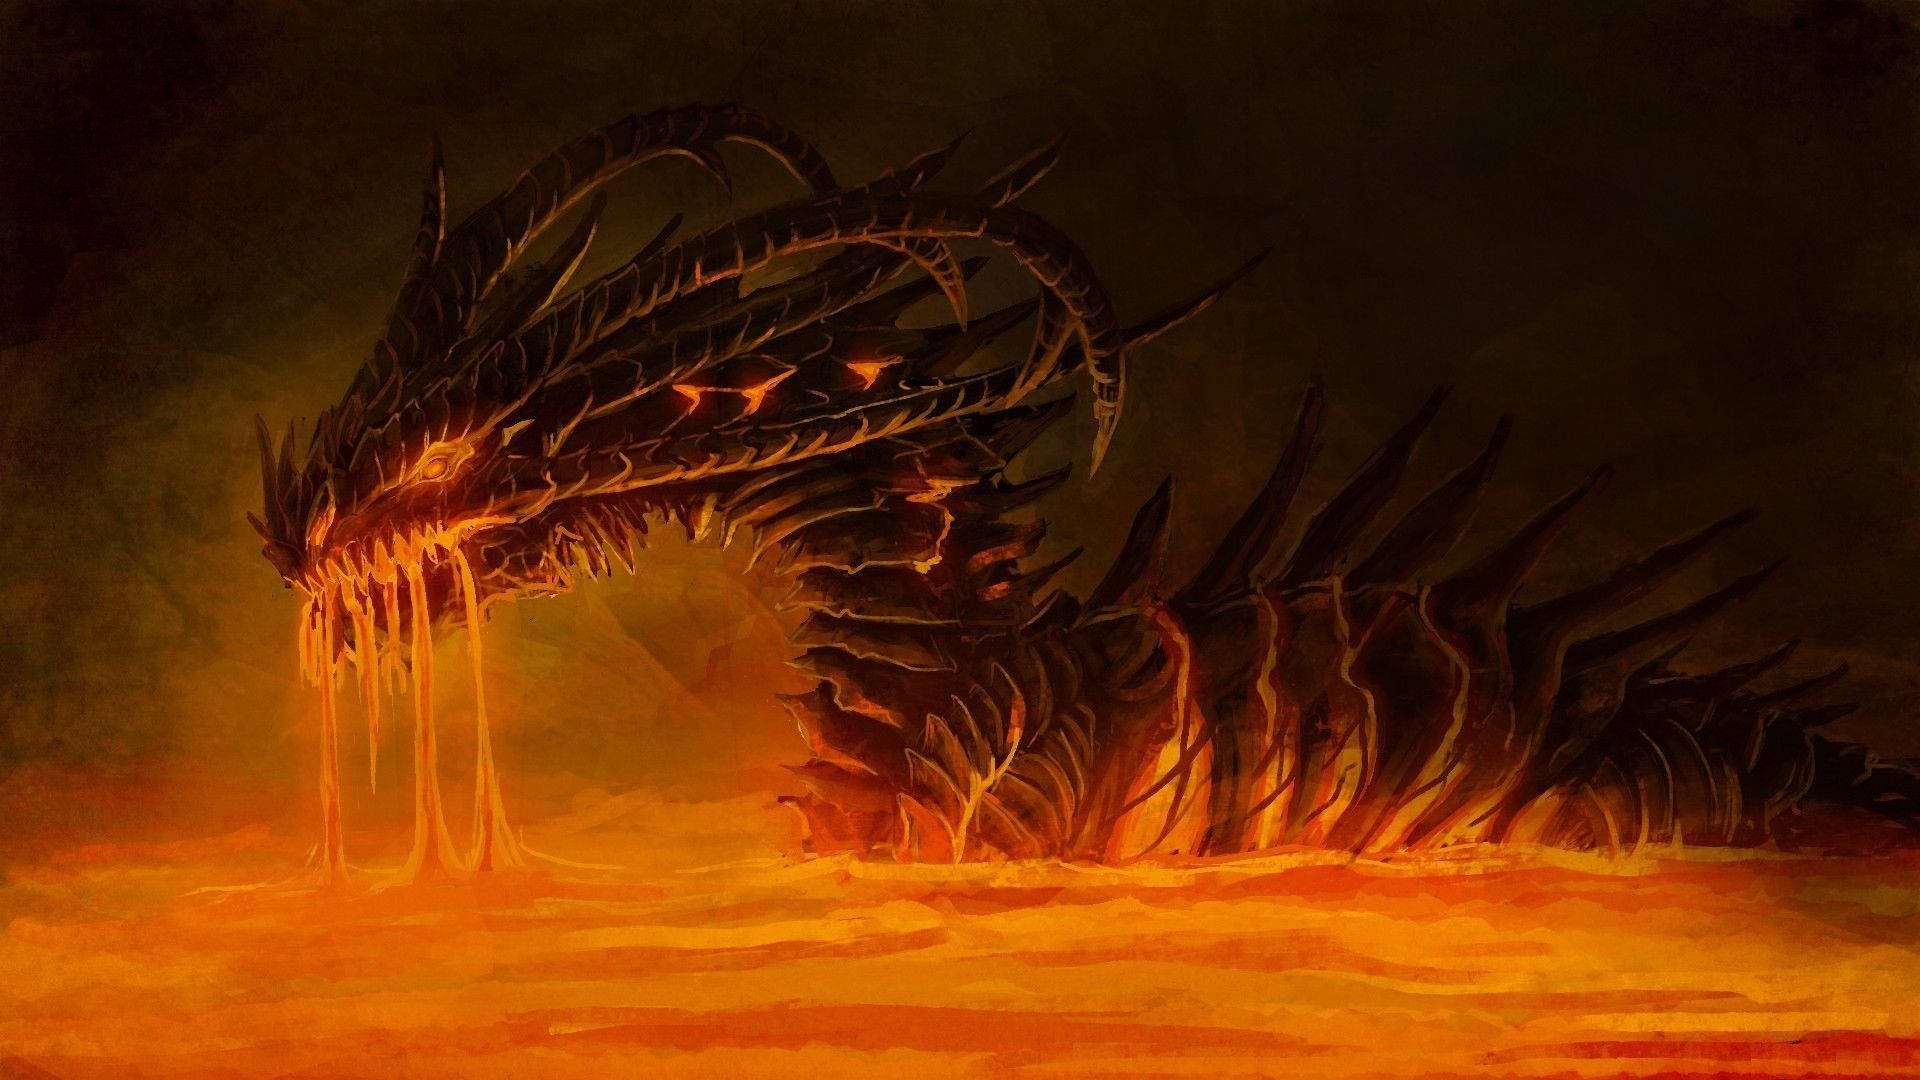 Majestic Fire Dragon Roaring in Flames Wallpaper